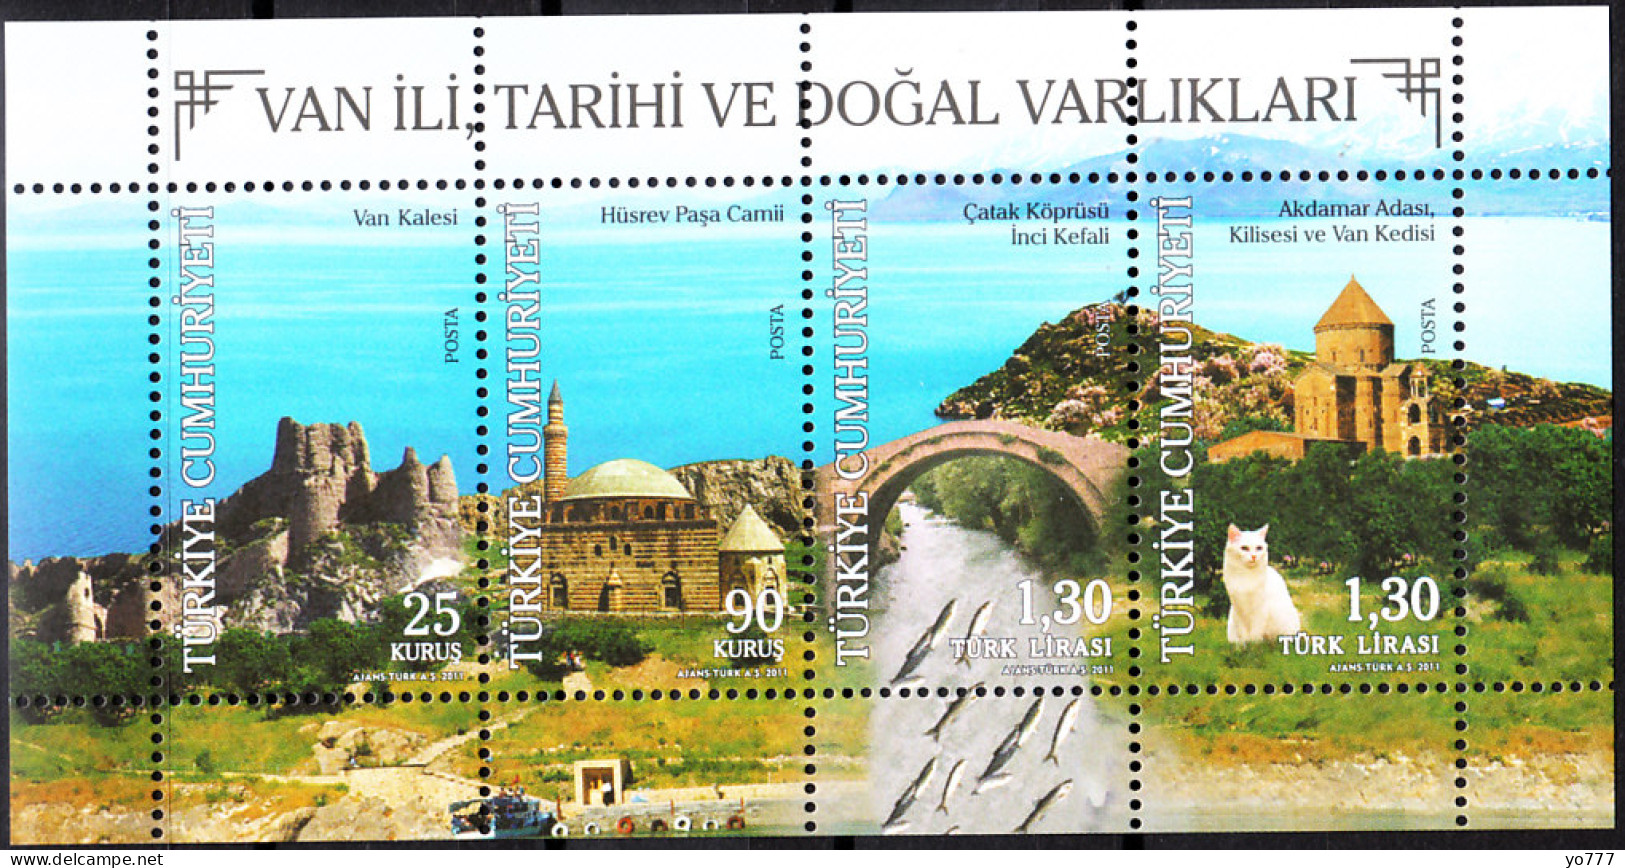 (3904-07) TURKEY THE CITY OF VAN HISTORY AND NATURAL ASSESTS SHEET AKDAMAR CHURCH VAN CAD MNH** - Neufs